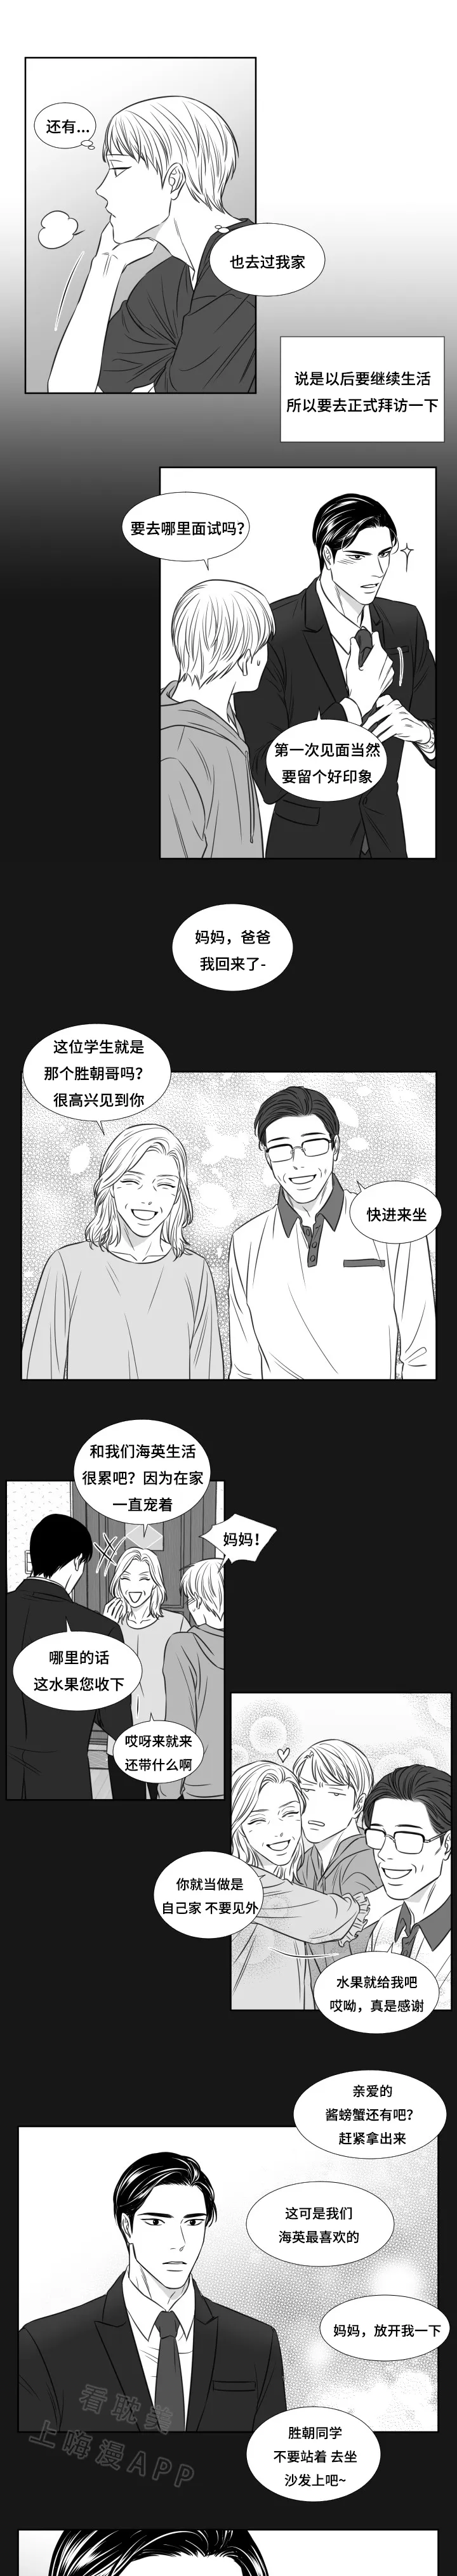 阴阳主仆/午夜迷途漫画漫画,第98话7图